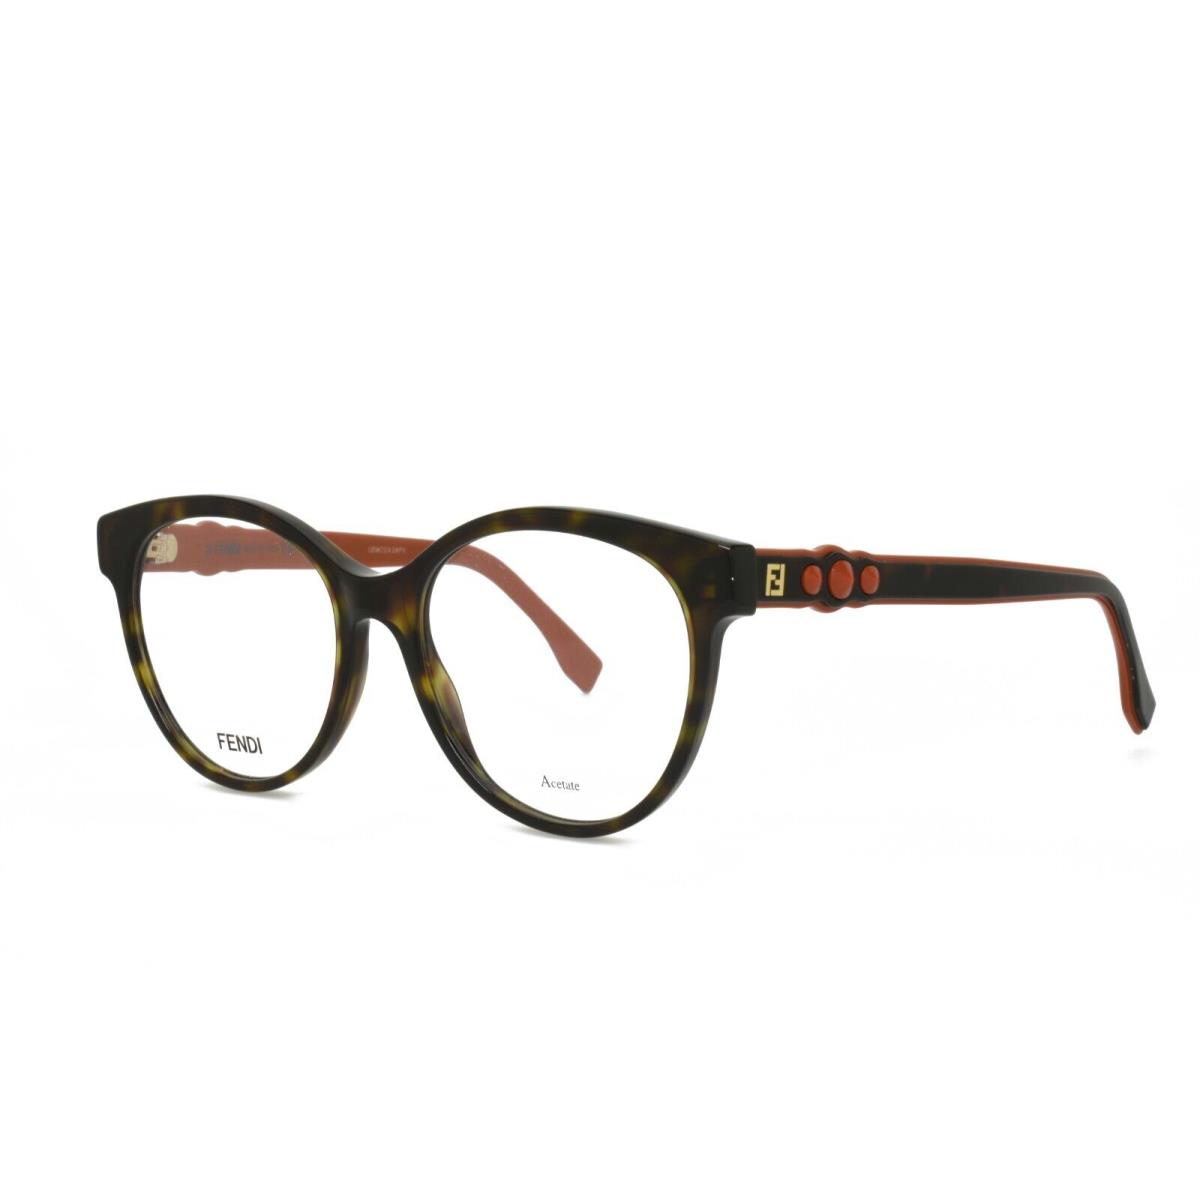 Fendi 0275 086 52-17-145 Tortoise Eyeglasses Frames